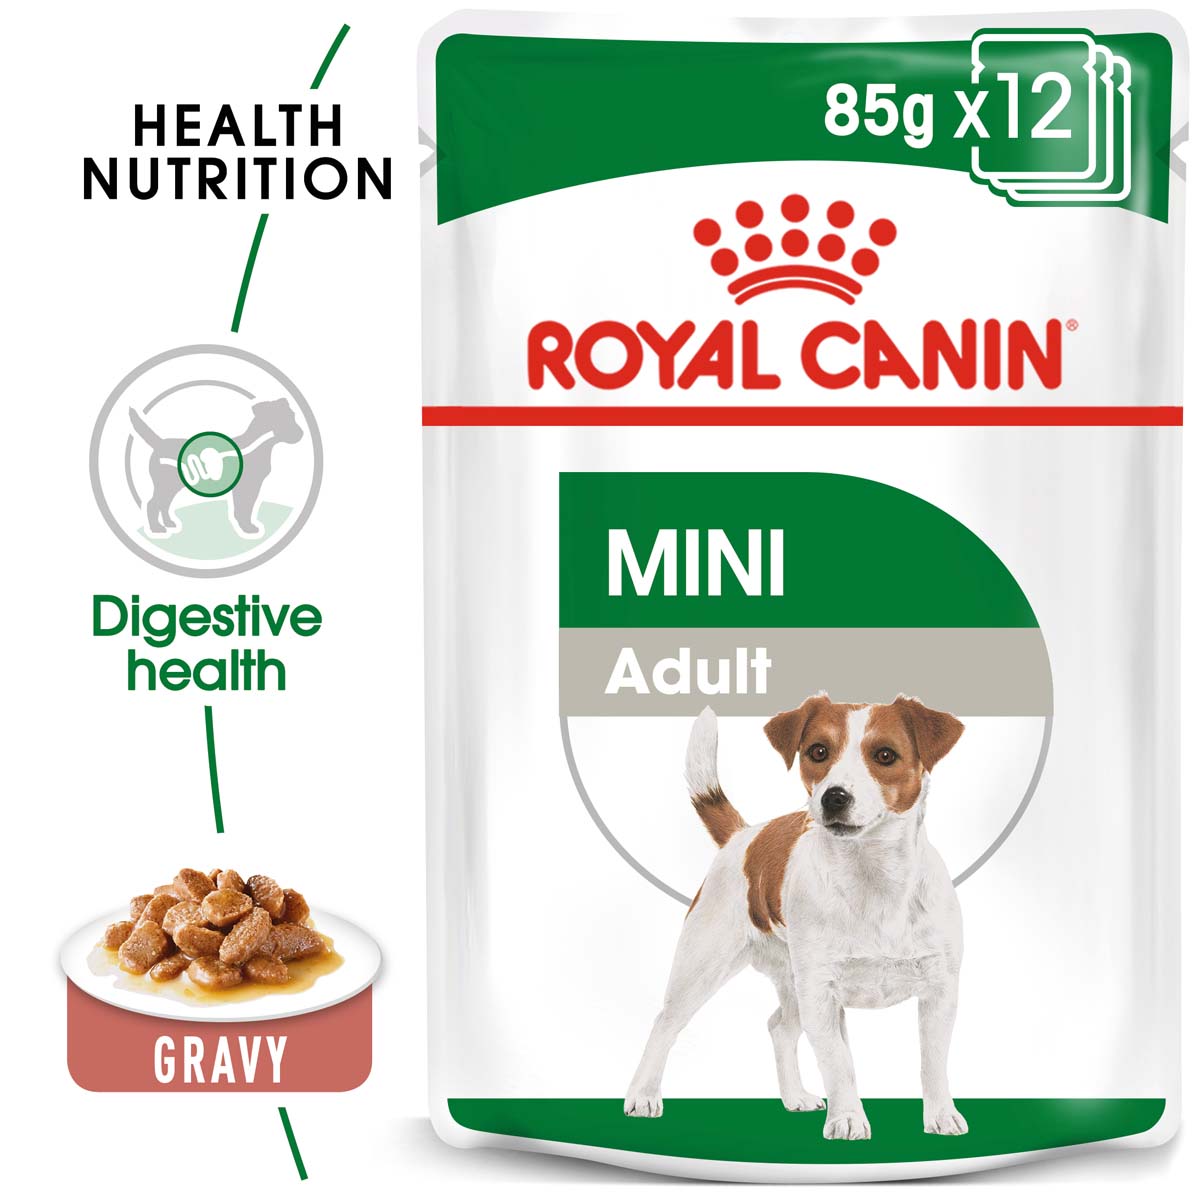 ROYAL CANIN MINI ADULT kapsička pro dospělé malé psy